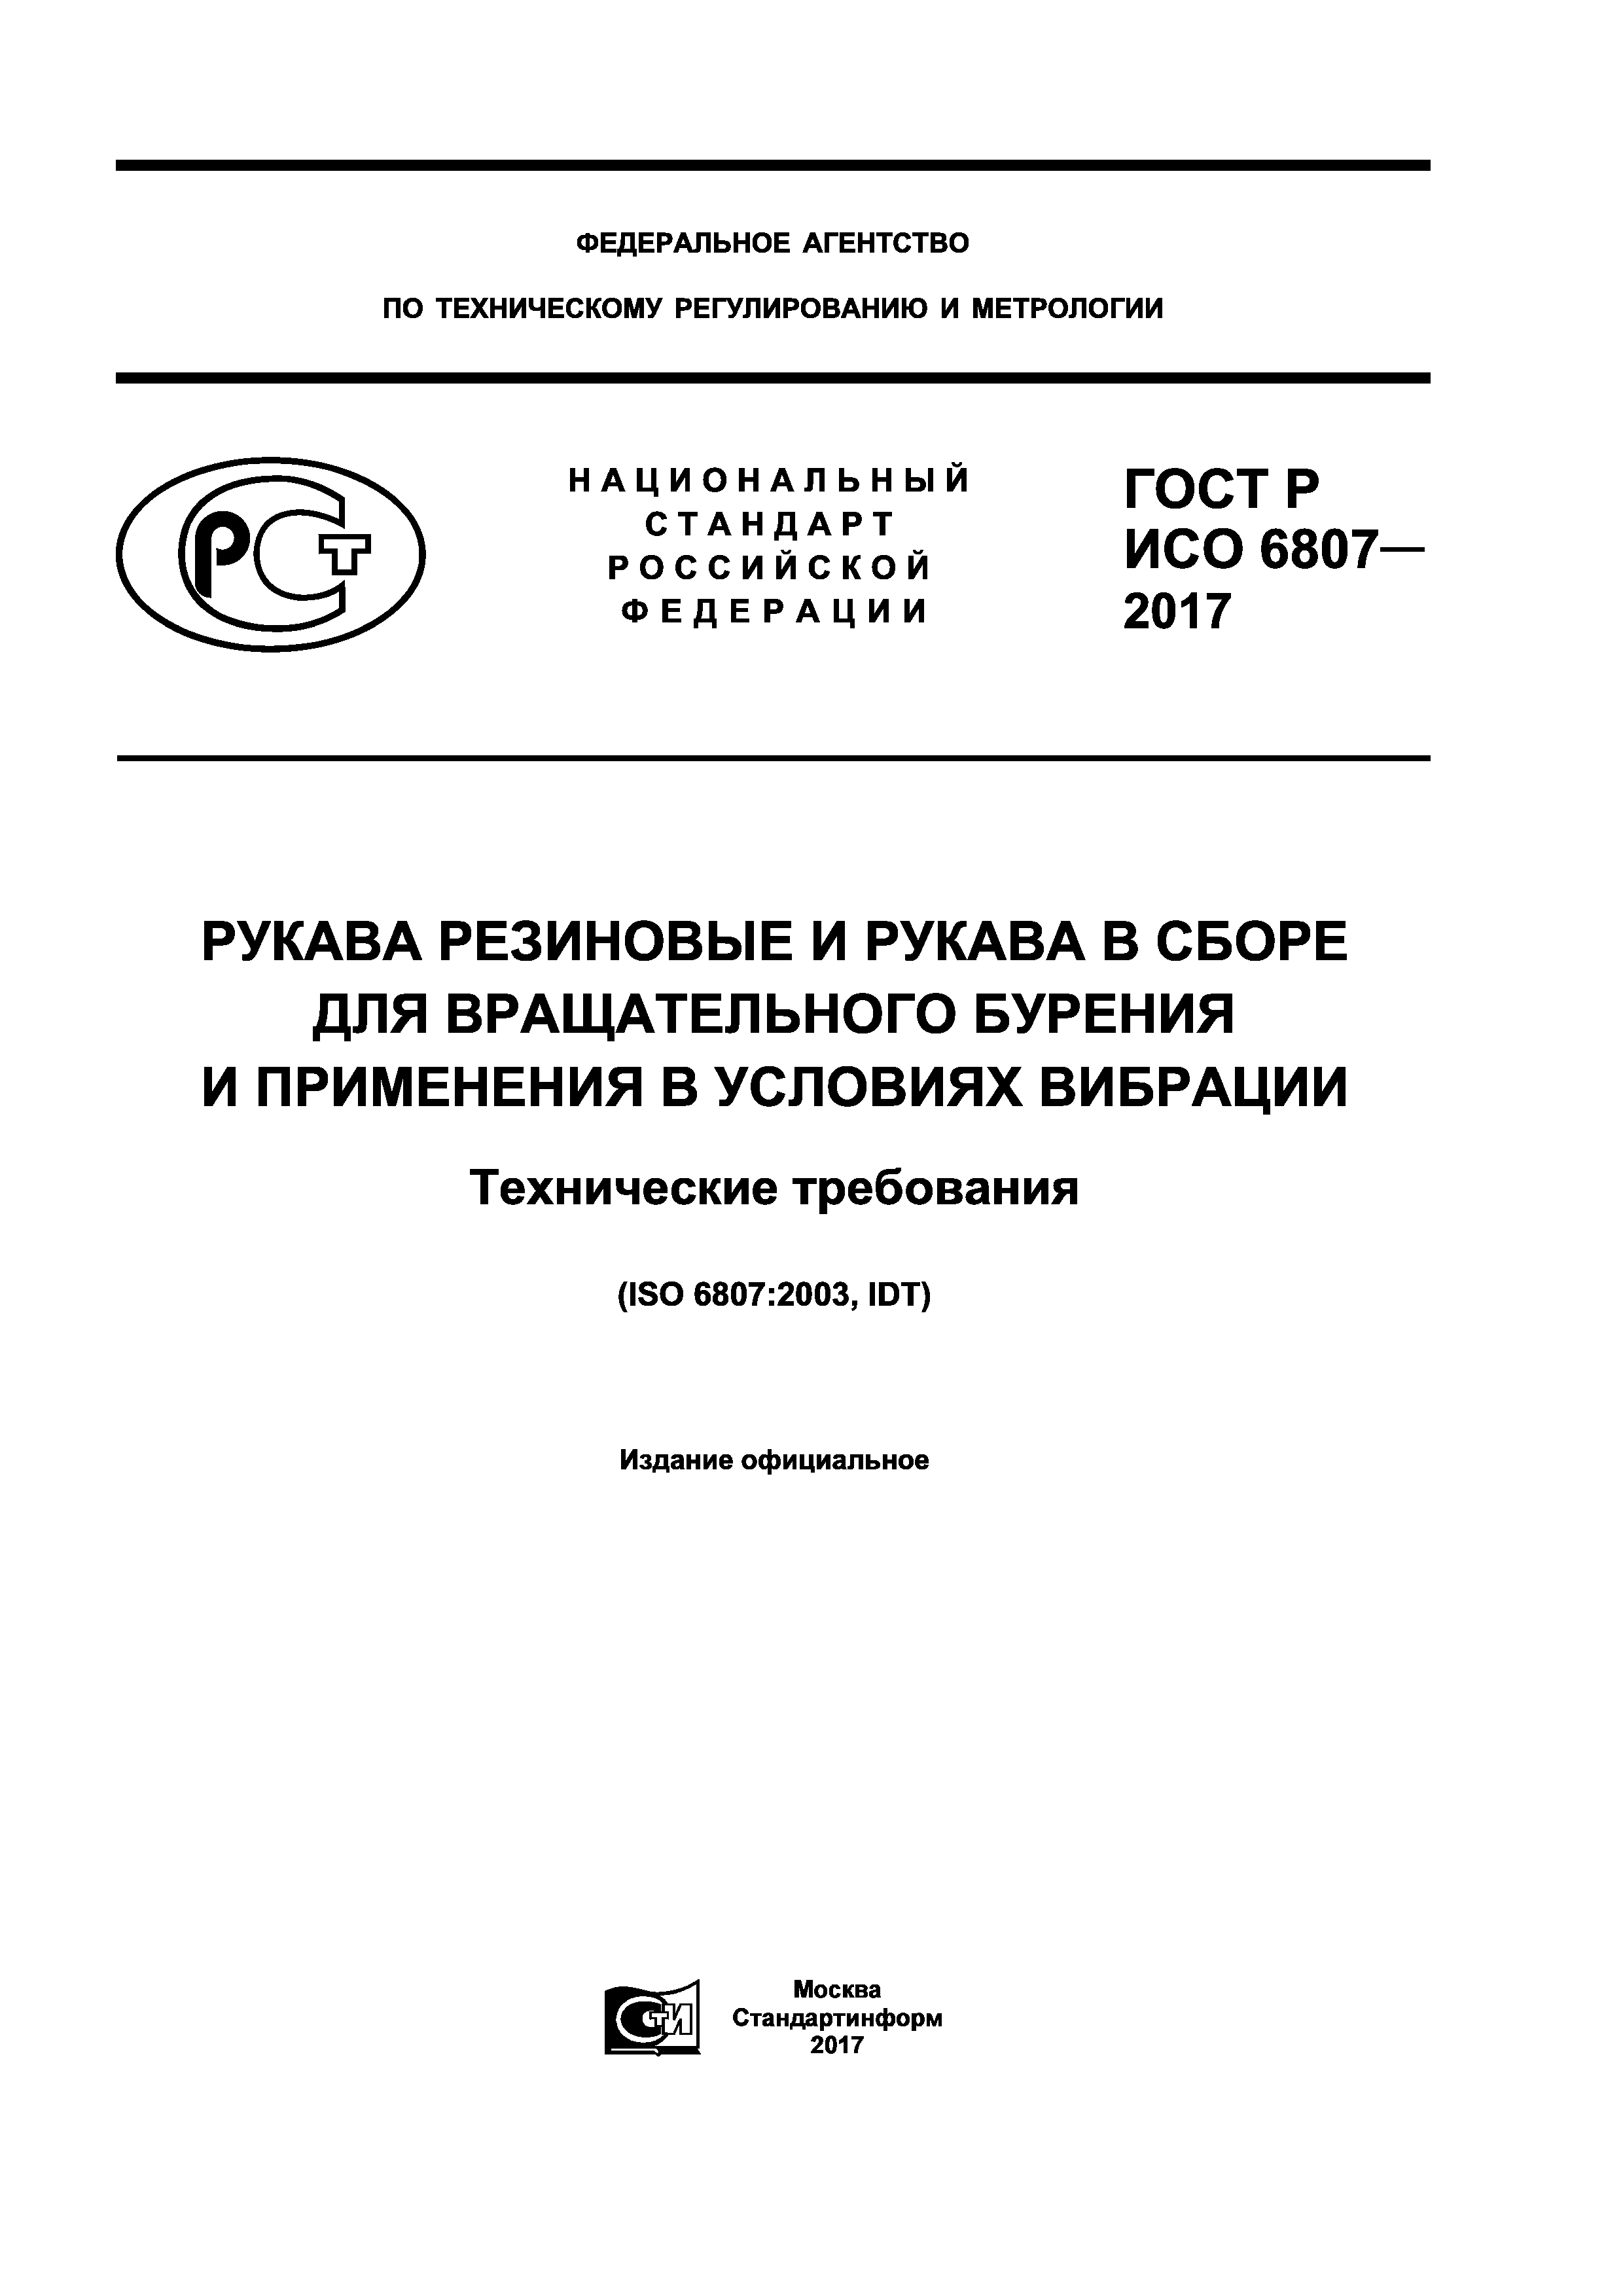 ГОСТ Р ИСО 6807-2017